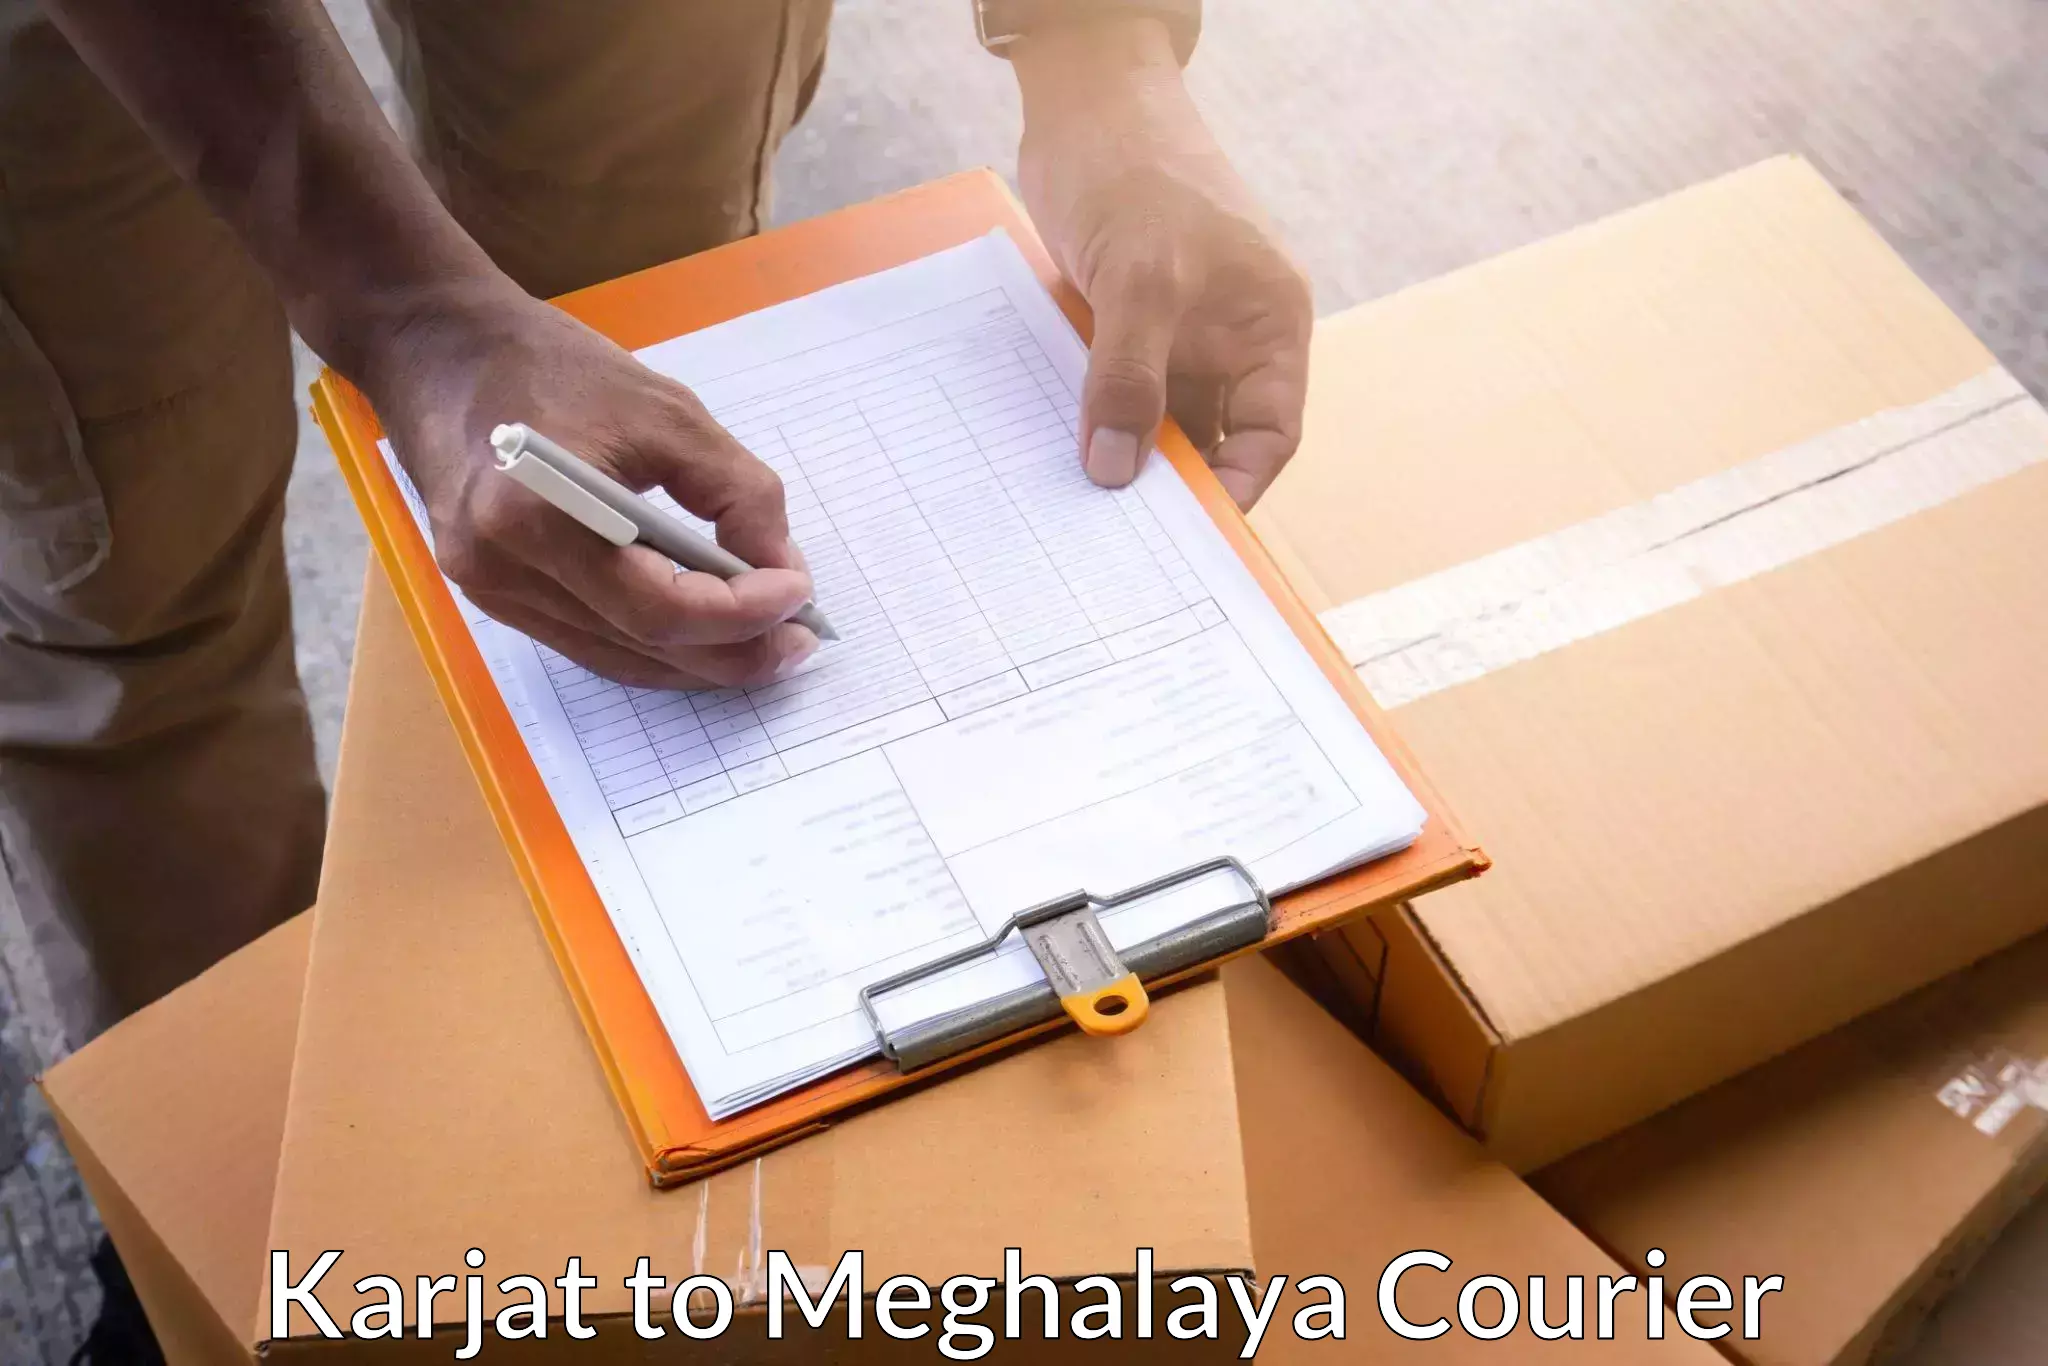 High-priority parcel service in Karjat to Meghalaya